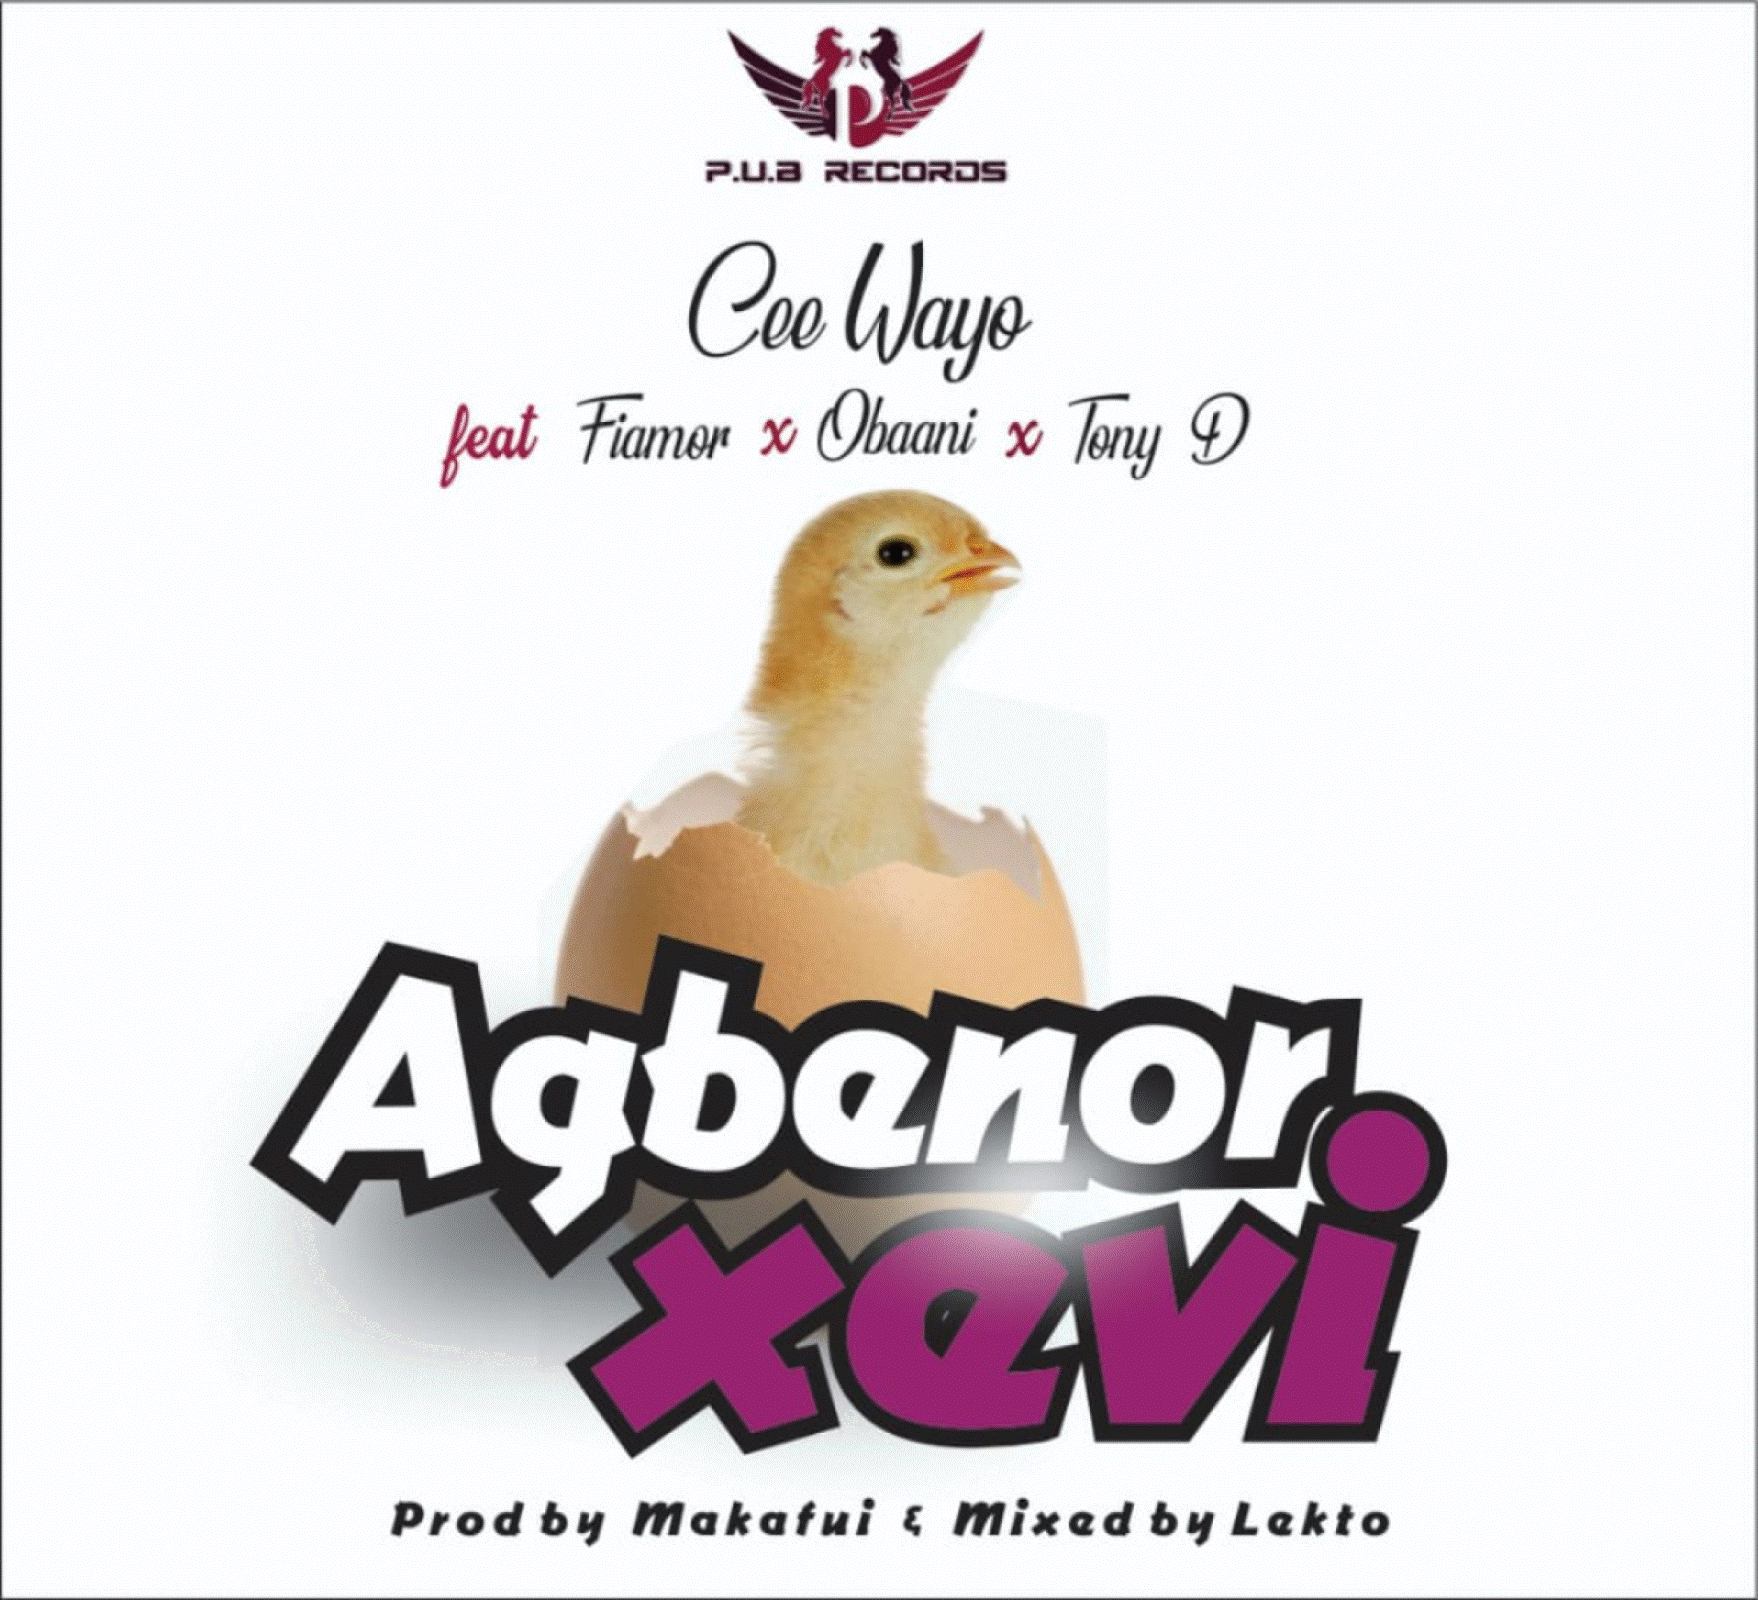 Cee Wayo - Agbenorxevi Ft Tony D x Fiamor x Obaani (Mixed by Lekto)